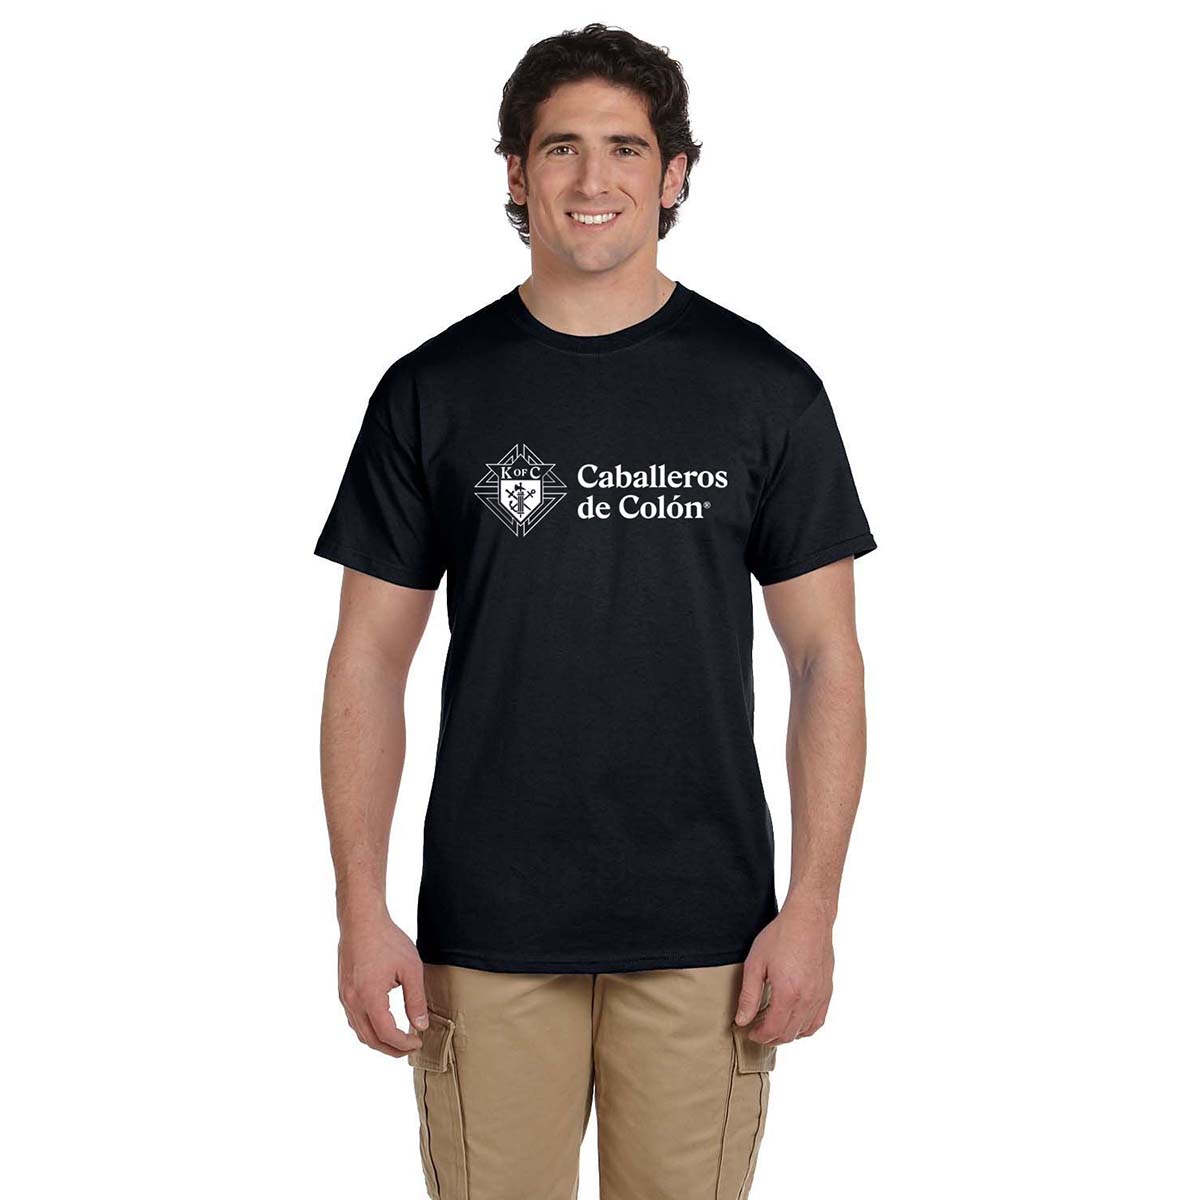 T-shirt Caballeros de Colón